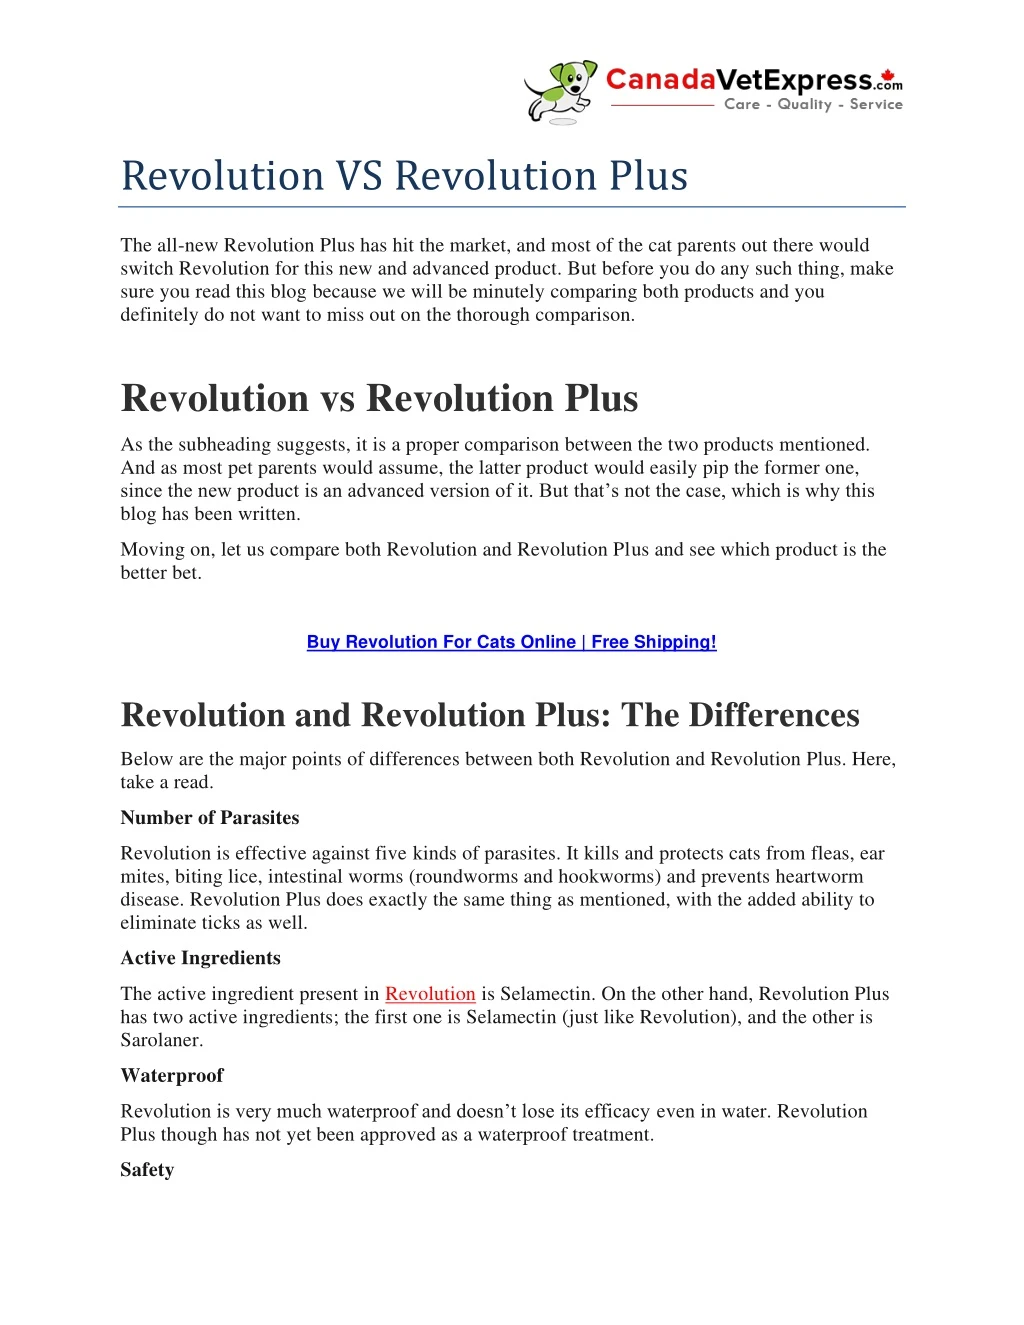 revolution vs revolution plus